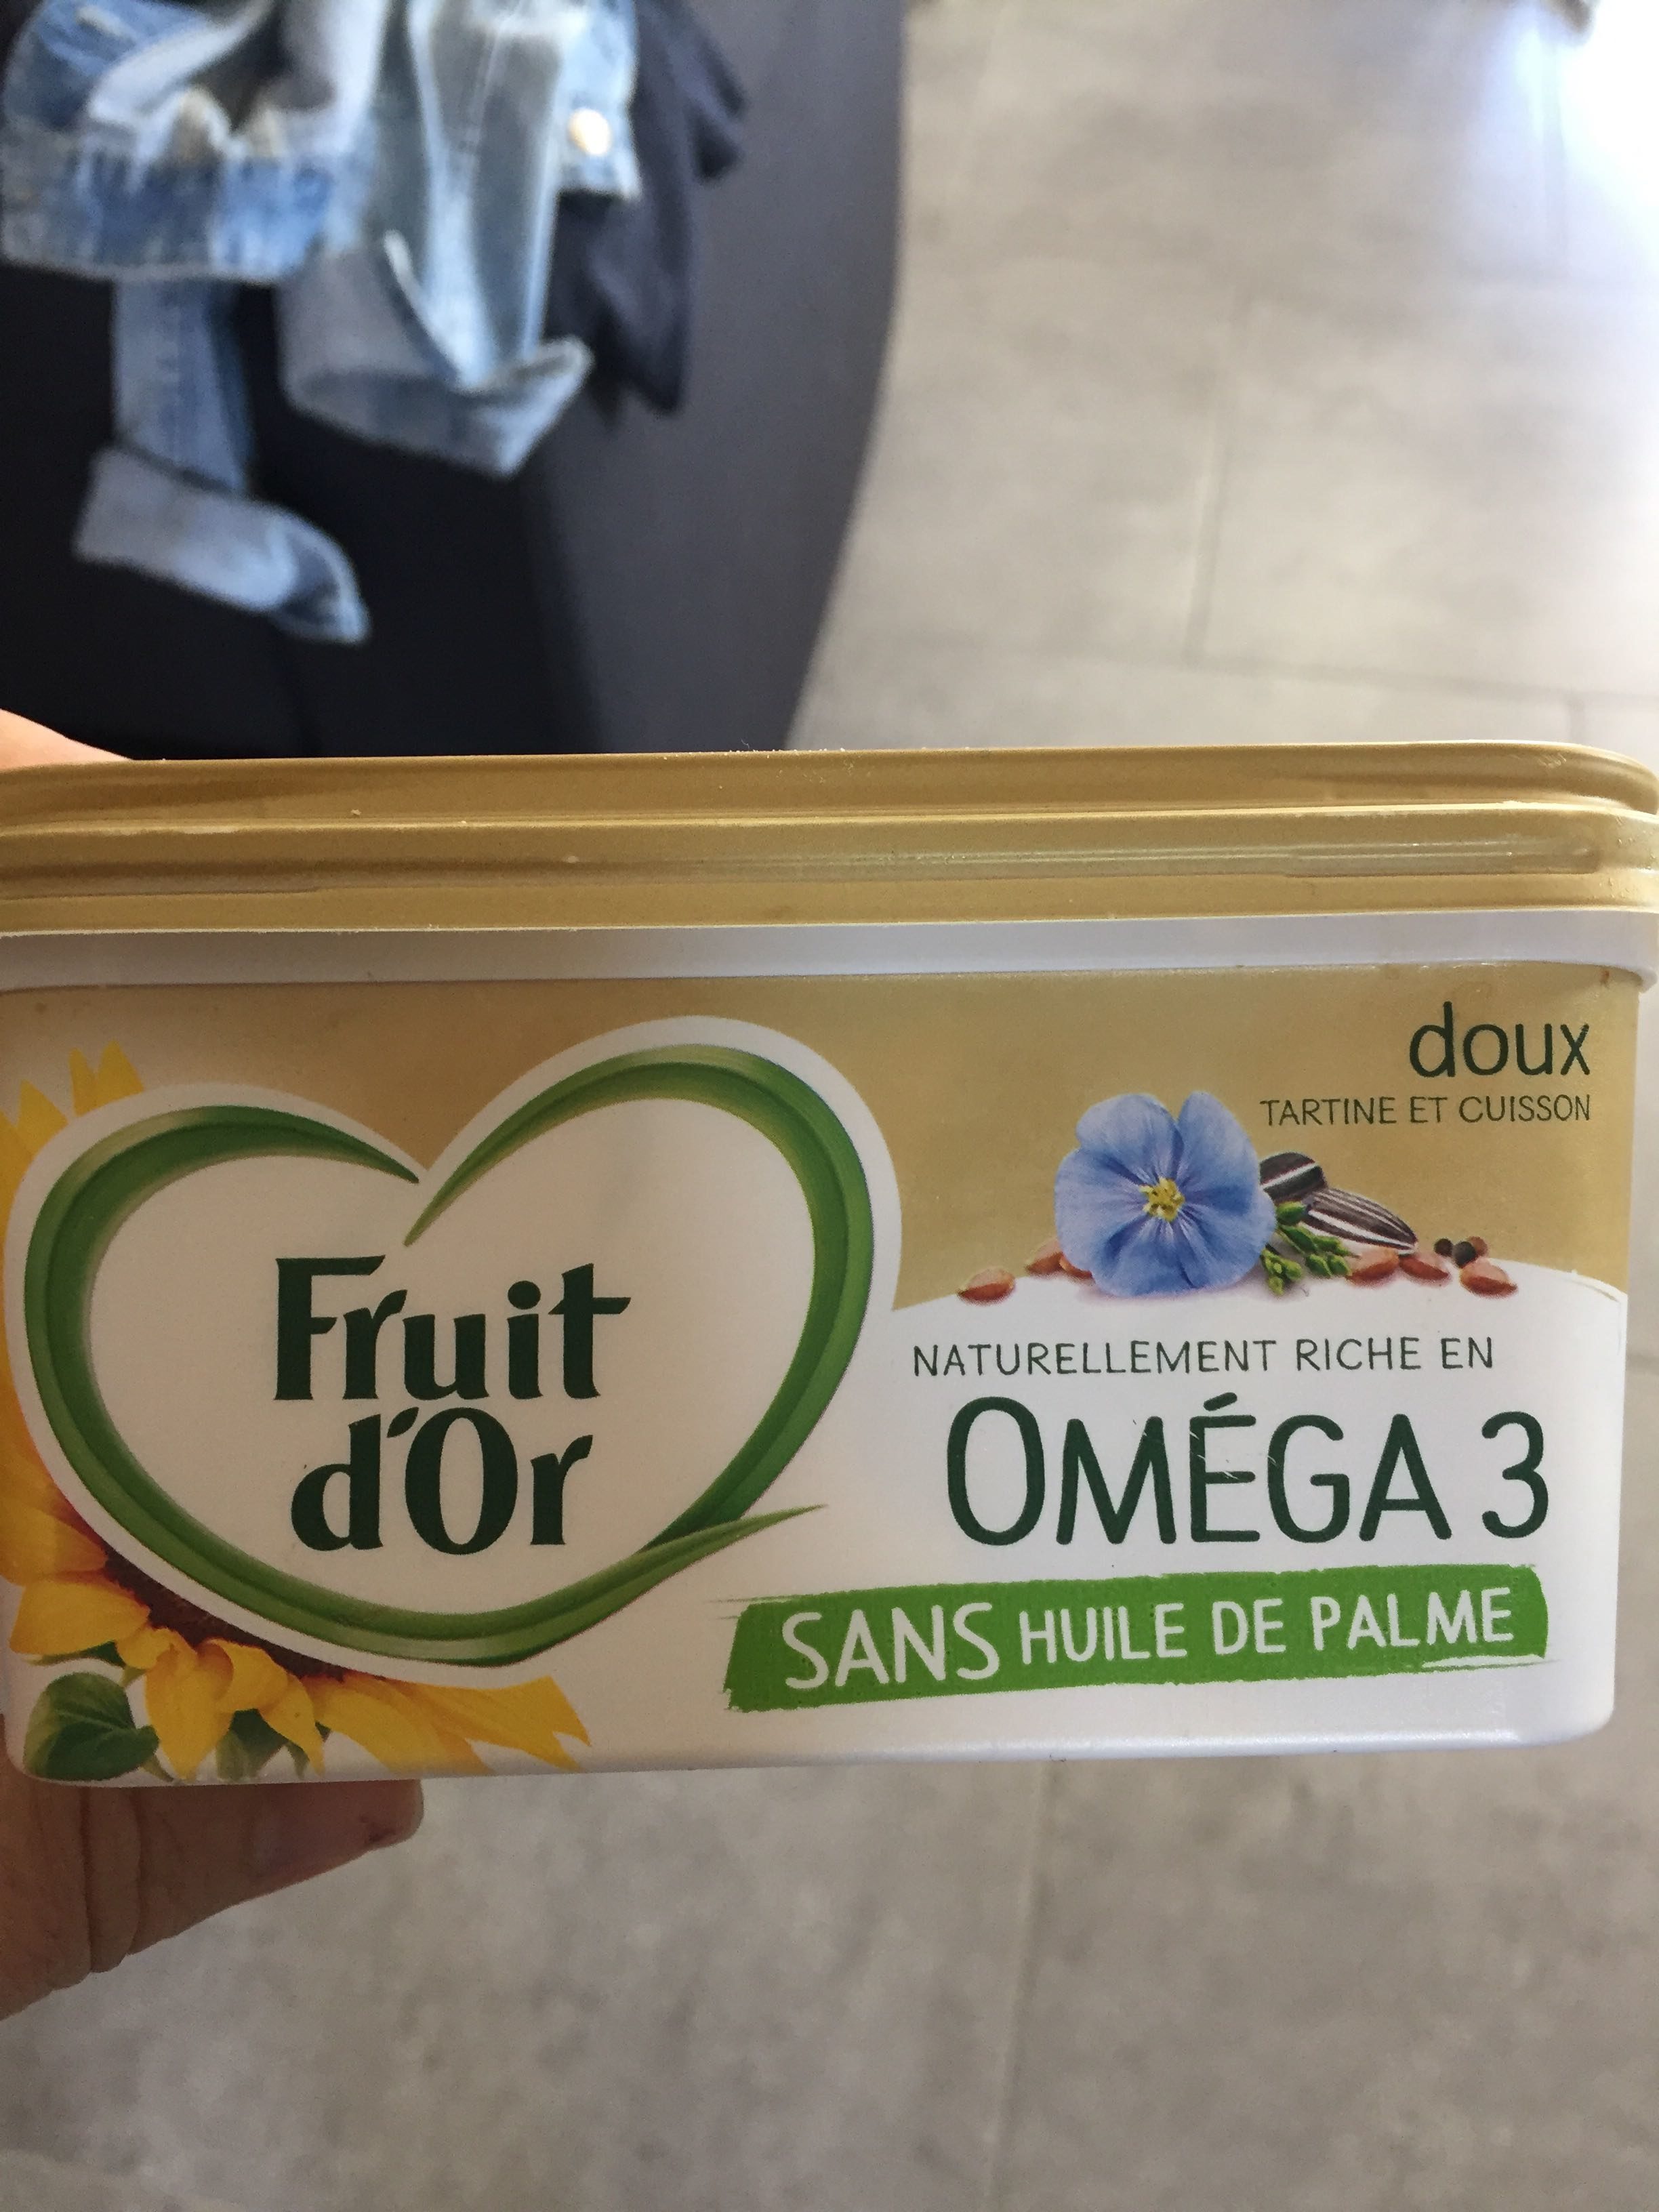 Fruit d’or oméga 3 - Product - fr